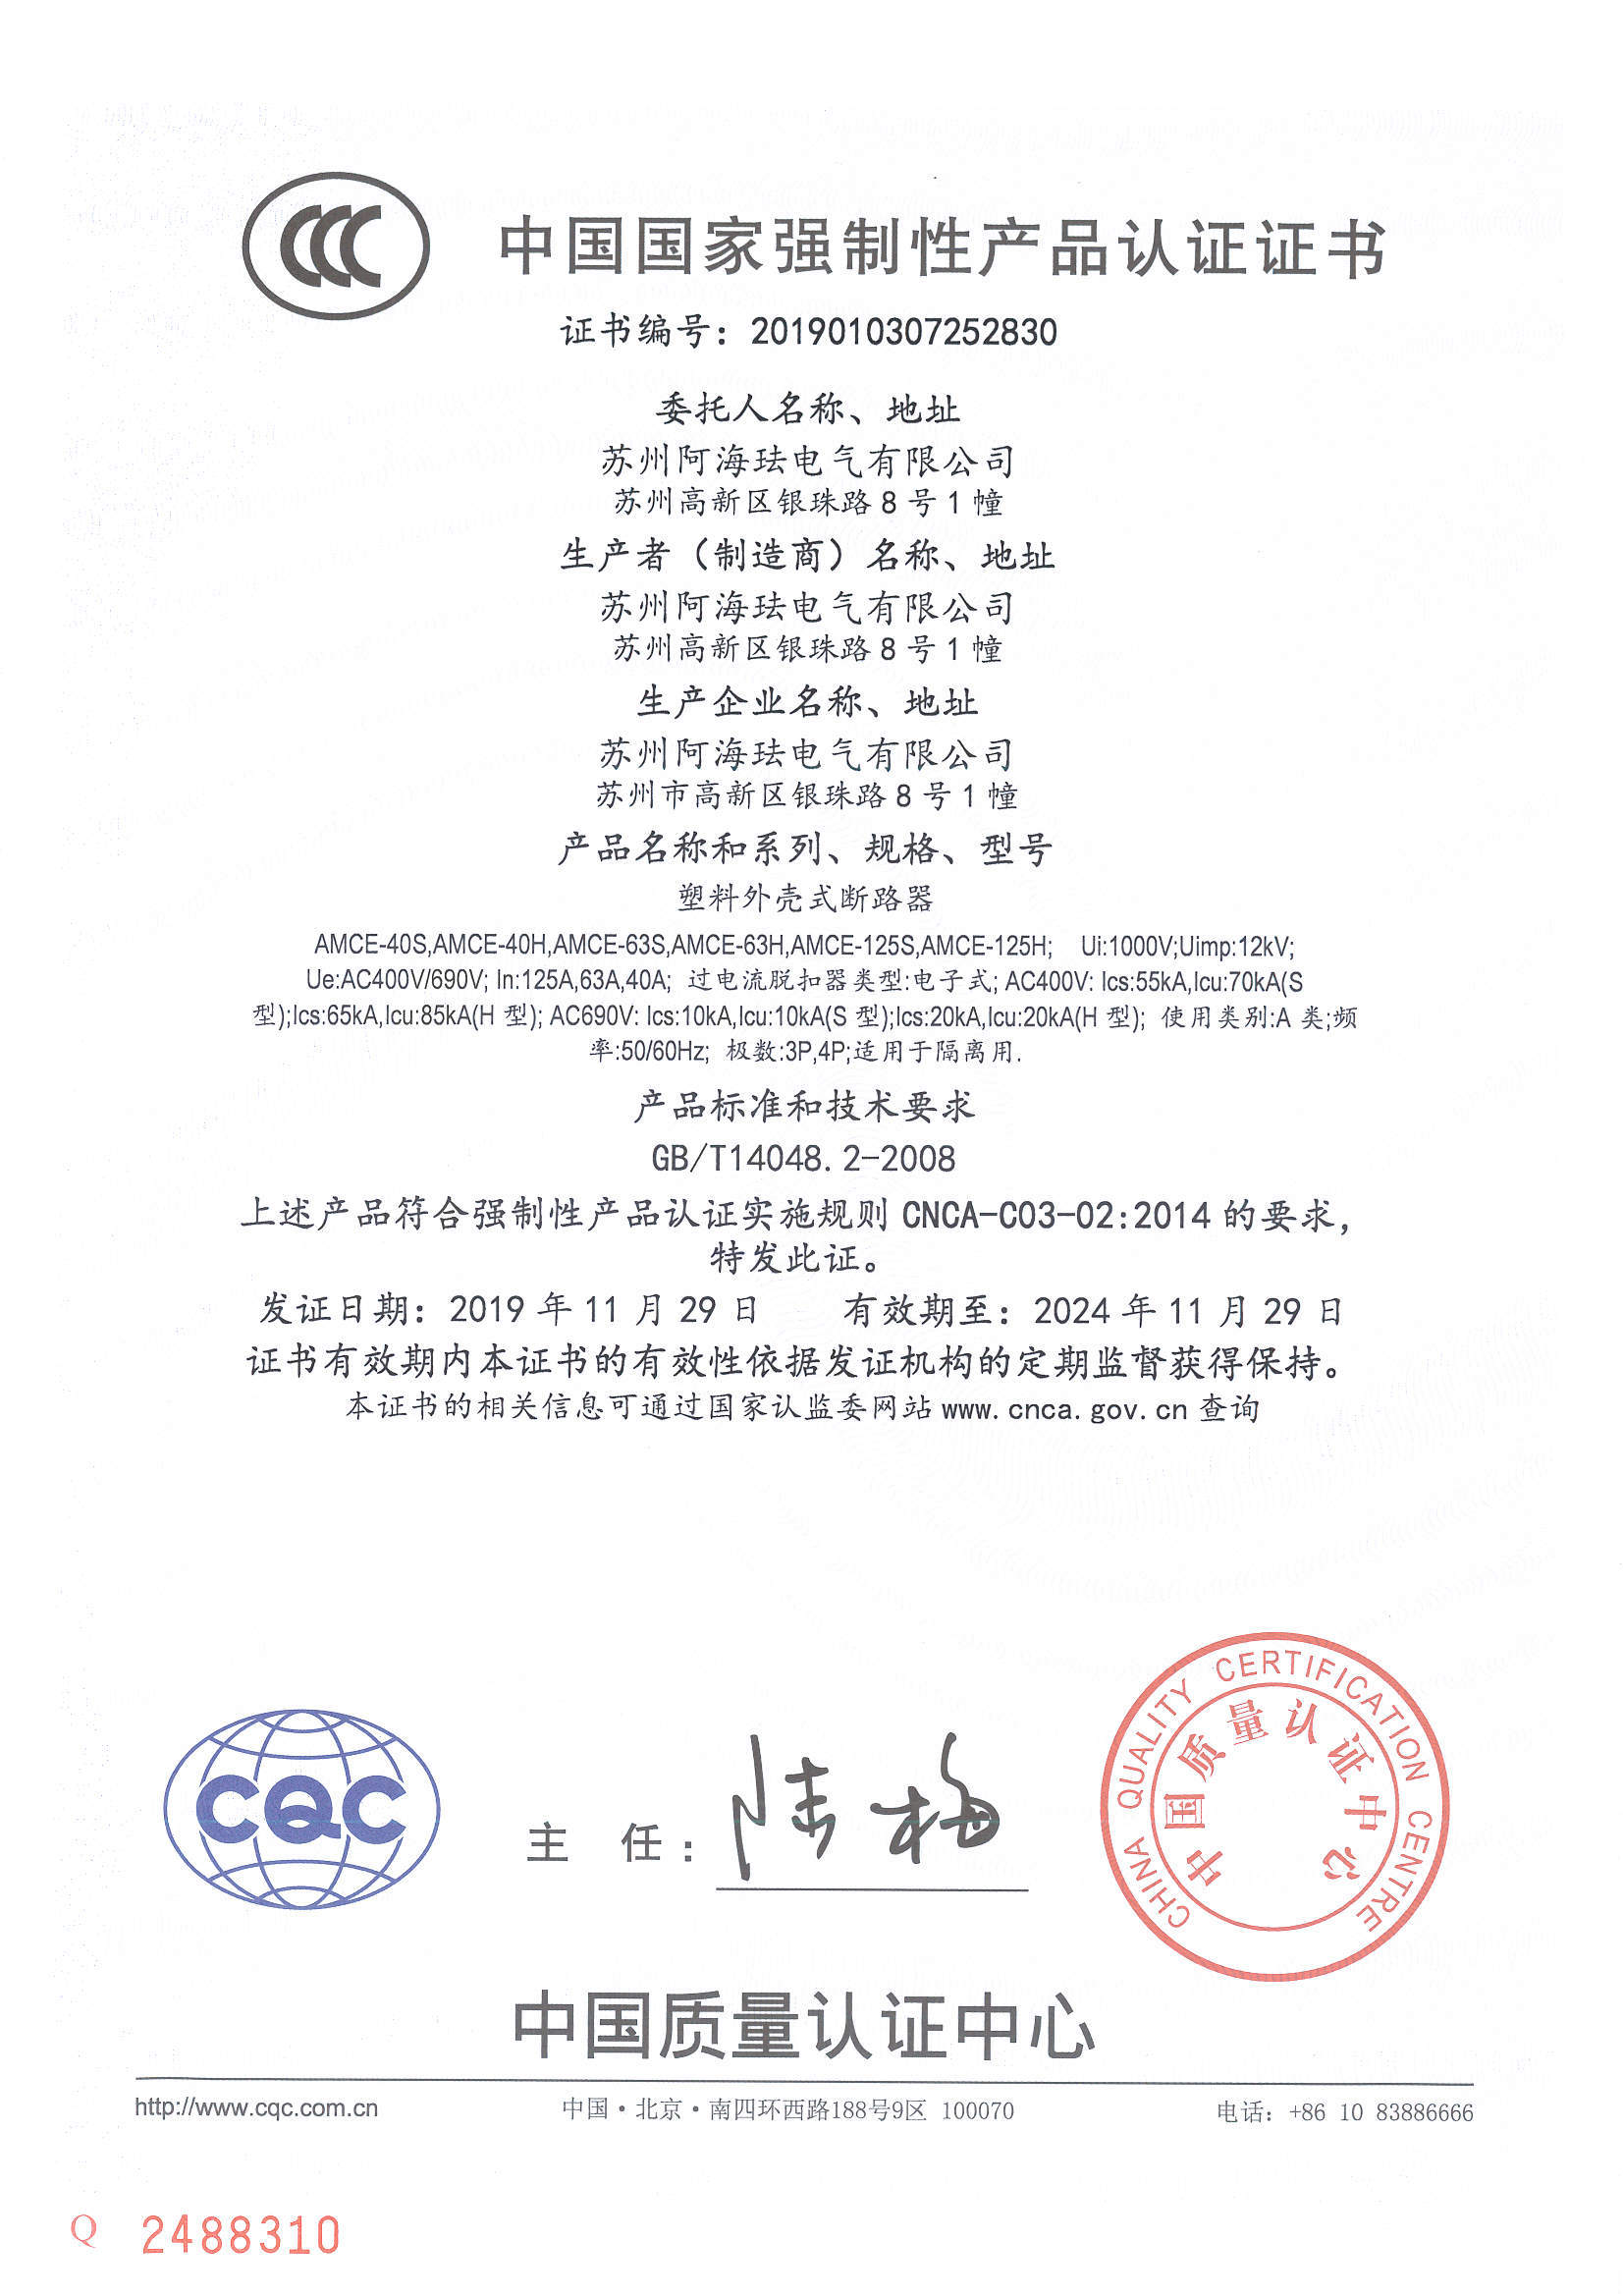 AMCE125 CCC Certificate